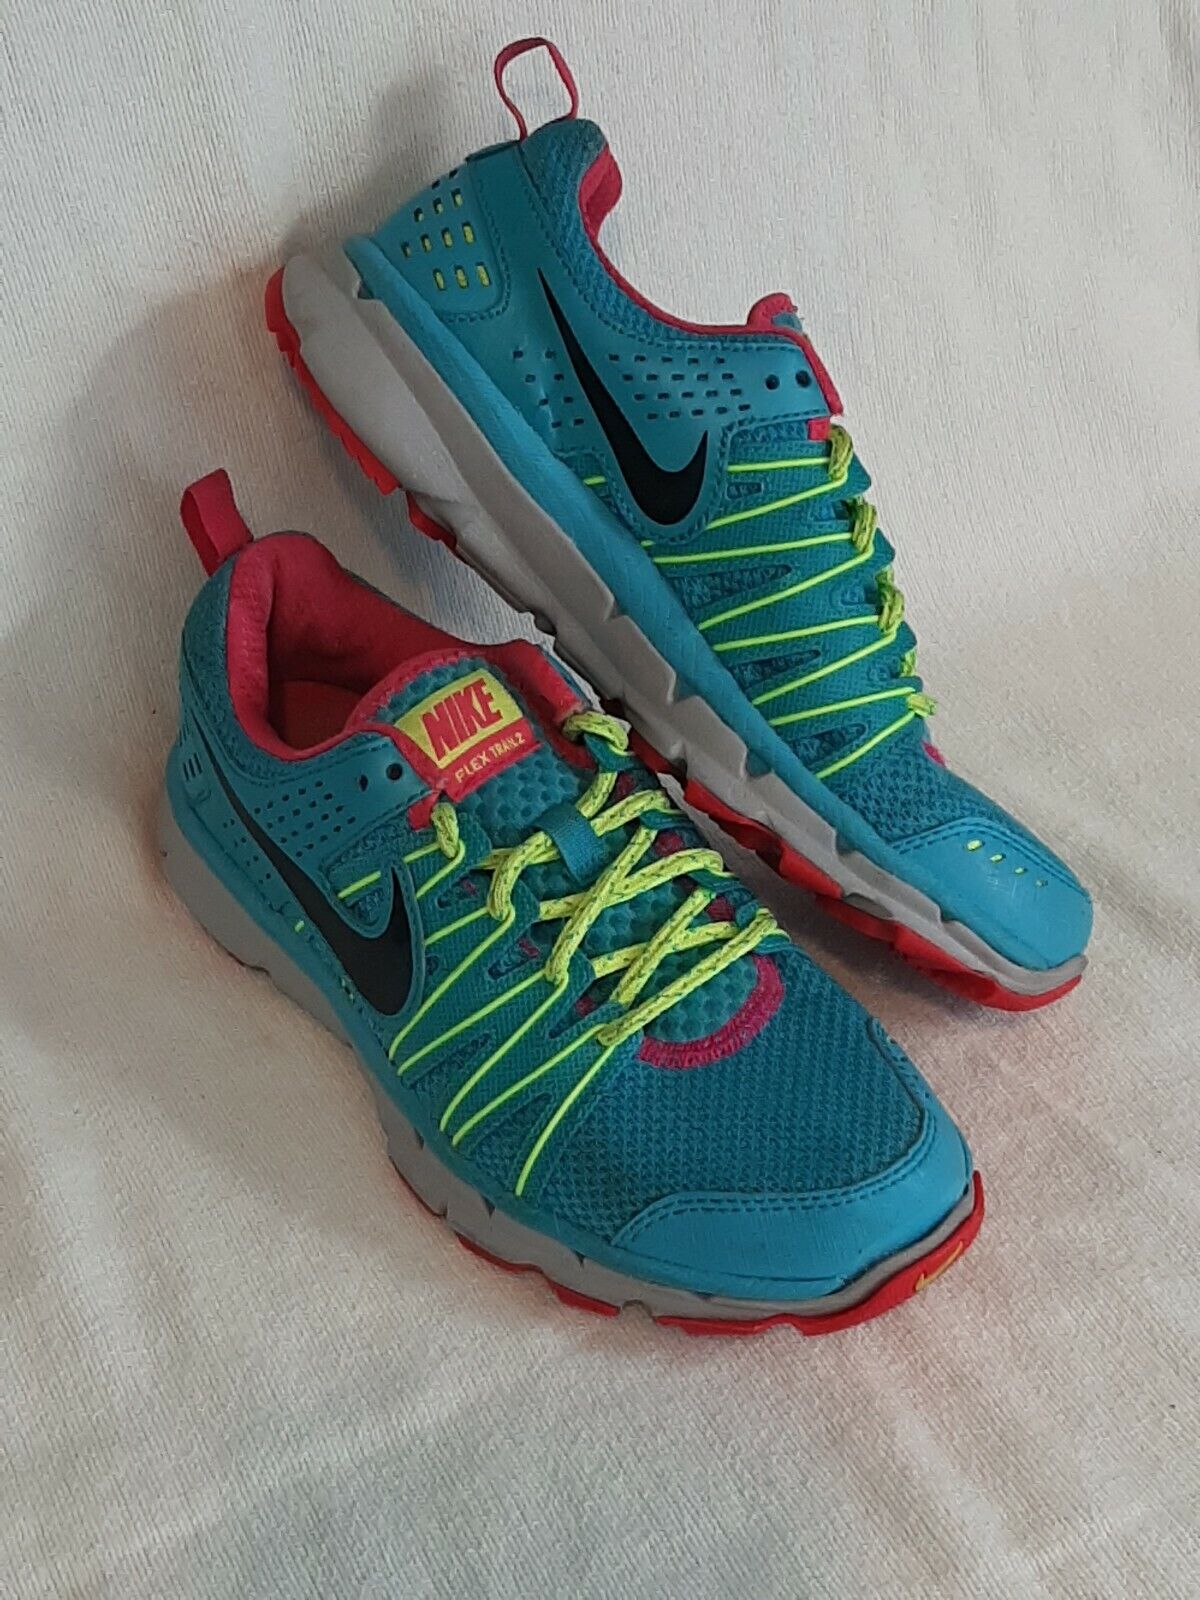 Elegancia Revisión triunfante Zapatos para correr Nike Flex Trail 2 para mujer talla 6 azul lima rosa  616681-400, | eBay